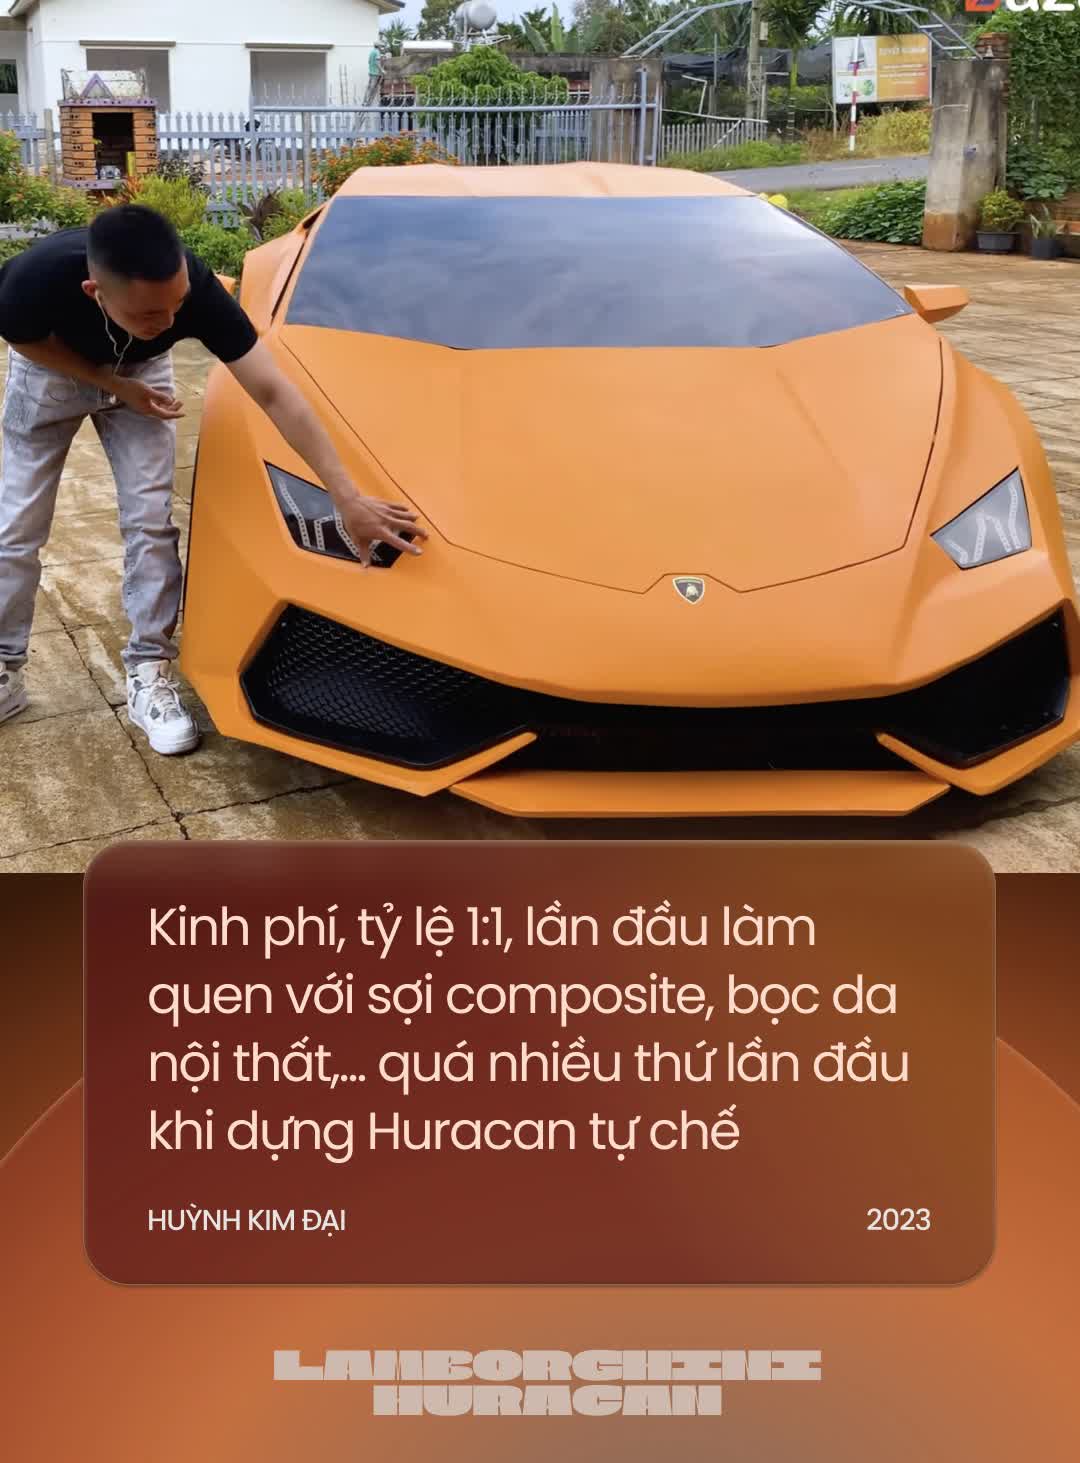 Đôi bạn Tây Nguyên tự chế Lamborghini Huracan khiến cộng đồng quốc tế trầm trồ: ‘Năm tới sẽ chuyển mình để độc lạ nhất Việt Nam’ - ảnh 9